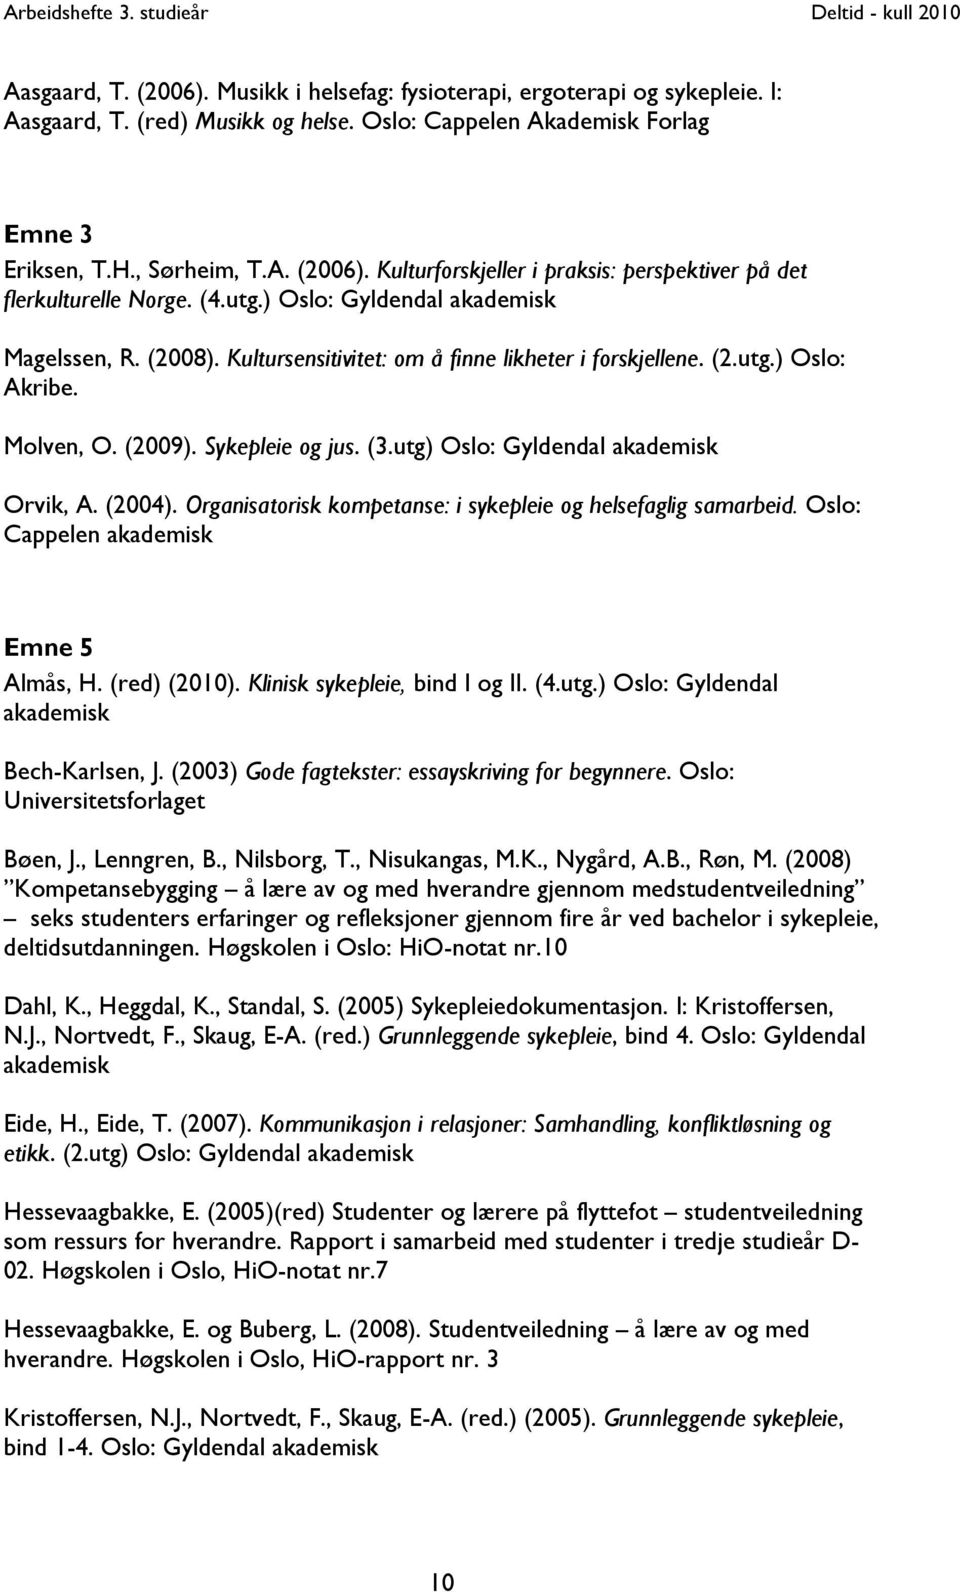 utg) Oslo: Gyldendal akademisk Orvik, A. (2004). Organisatorisk kompetanse: i sykepleie og helsefaglig samarbeid. Oslo: Cappelen akademisk Emne 5 Almås, H. (red) (2010).